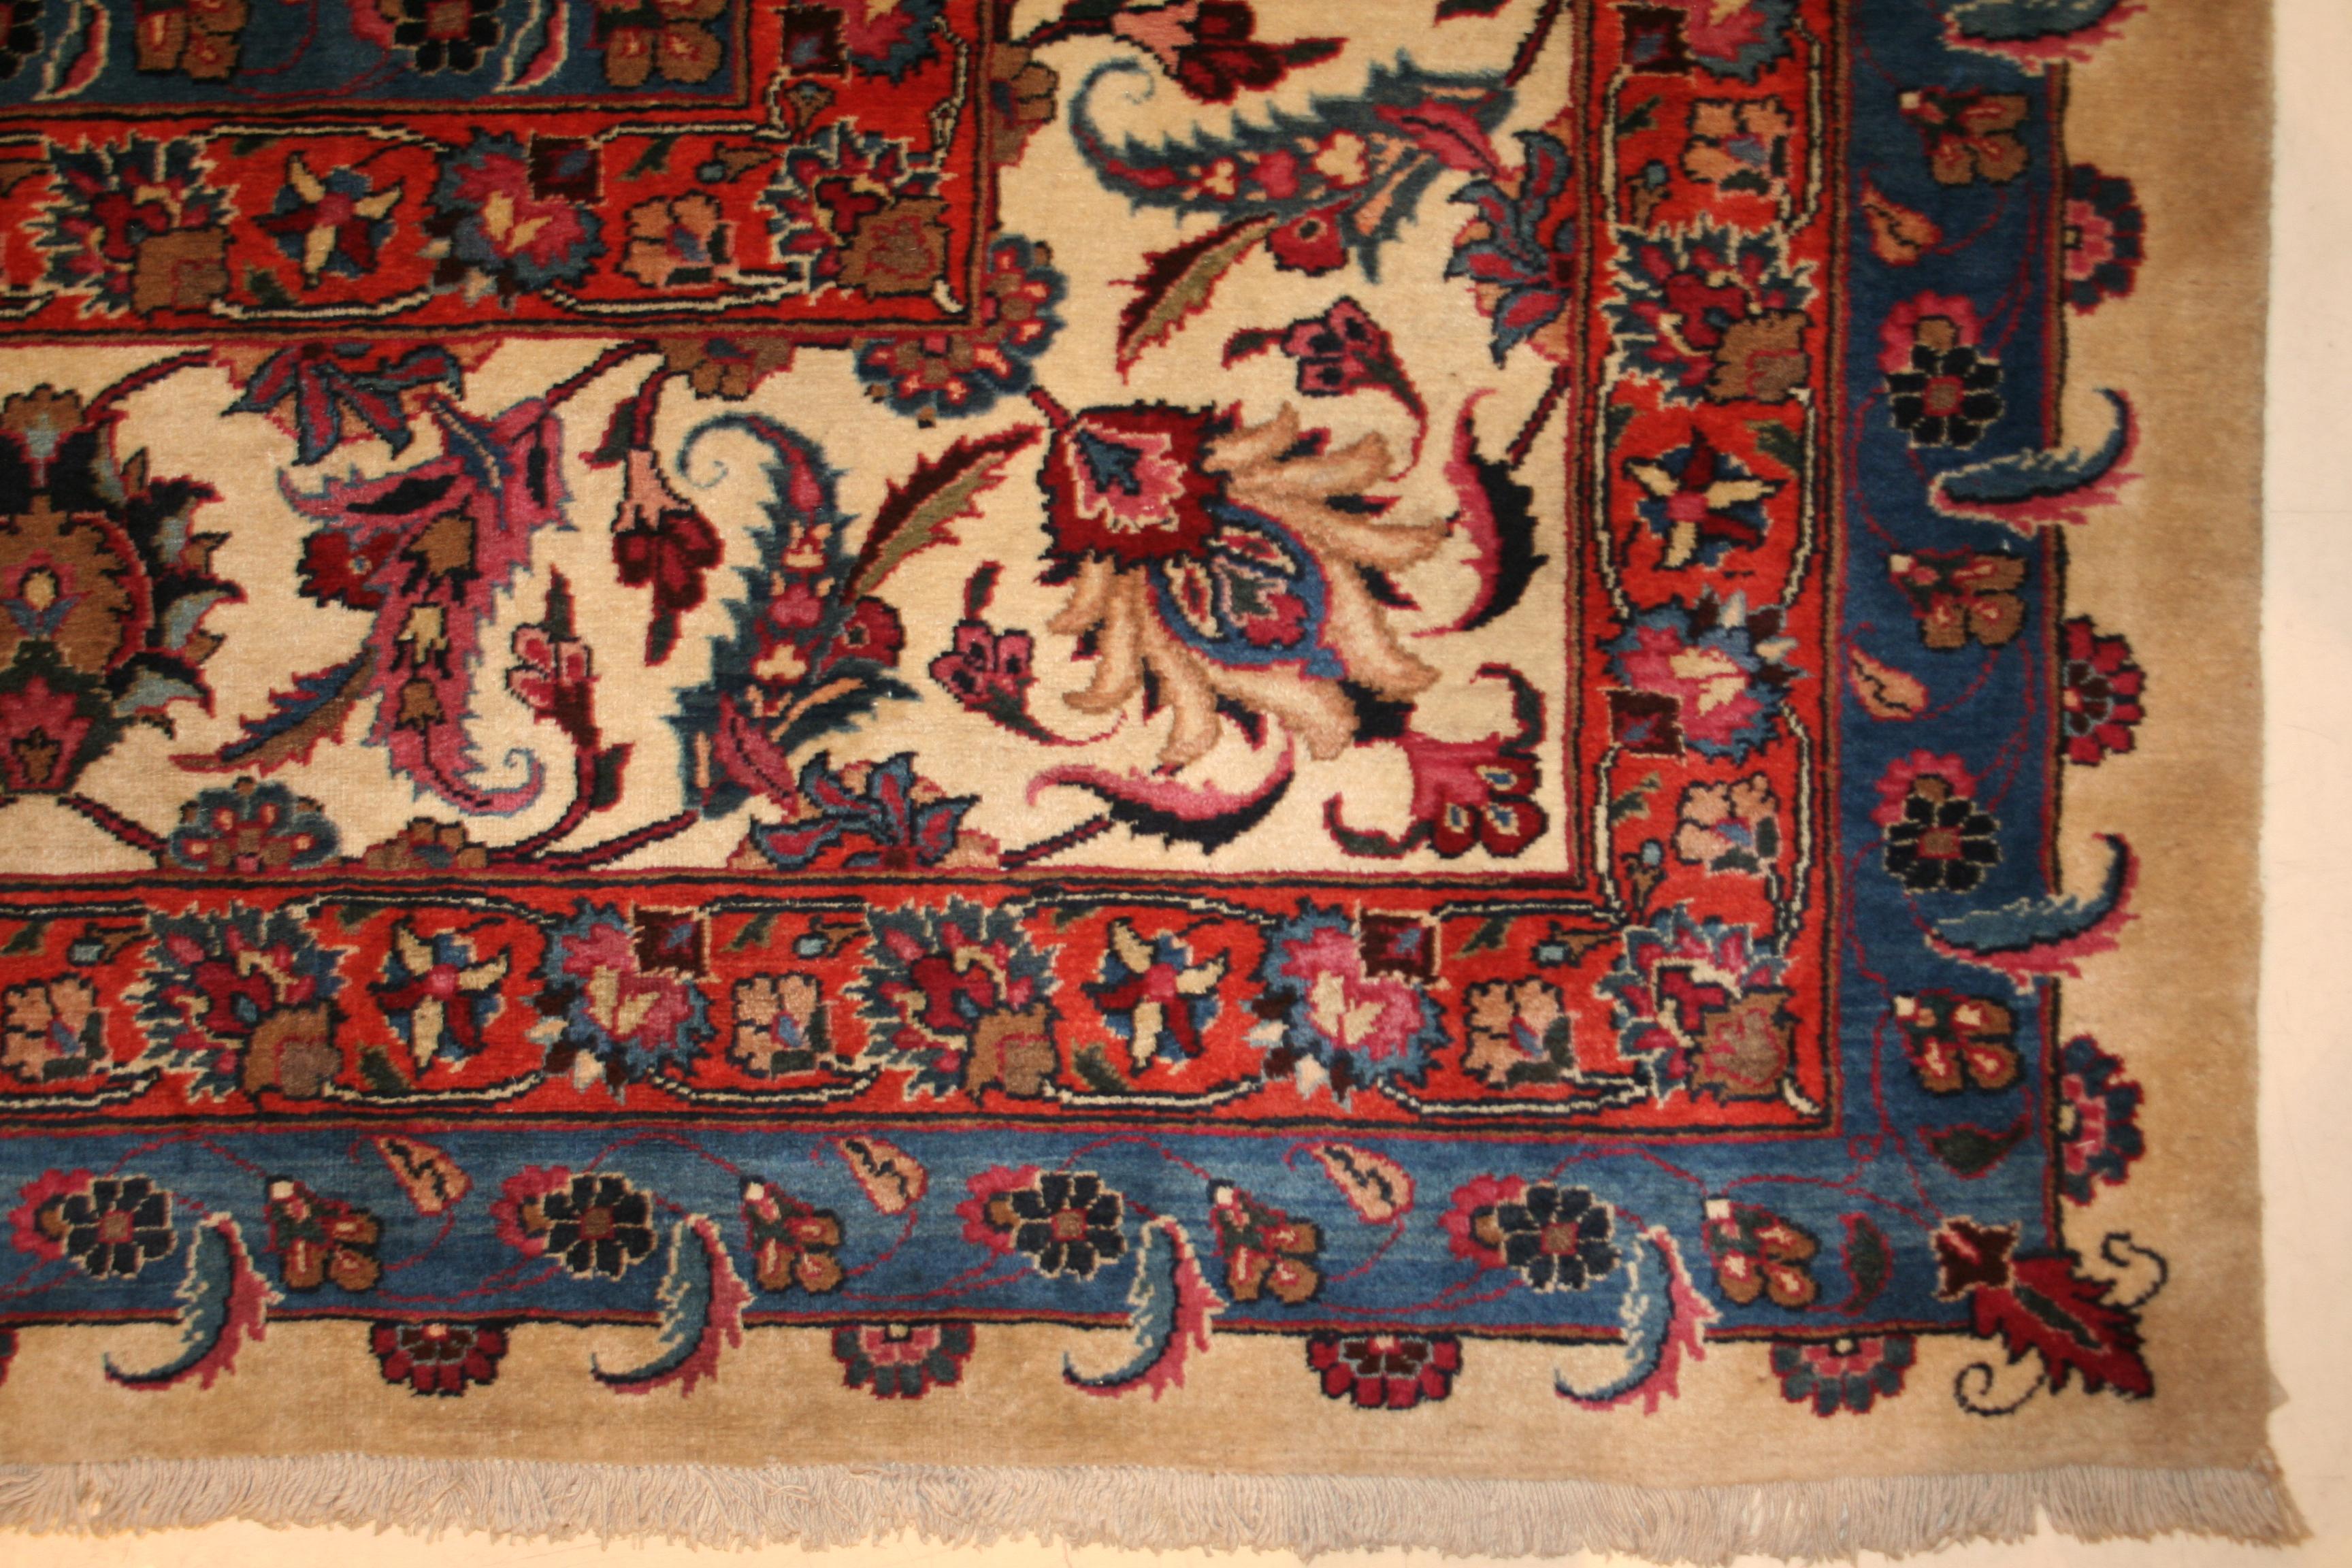 Ein äußerst feiner Teppich aus der Werkstatt in Lahore, der sich durch ein gut verteiltes botanisches Muster aus Blättern und Palmetten auf einem rubinroten Hintergrund aus Burma auszeichnet. Der weiße Rand verleiht der Komposition einen schönen